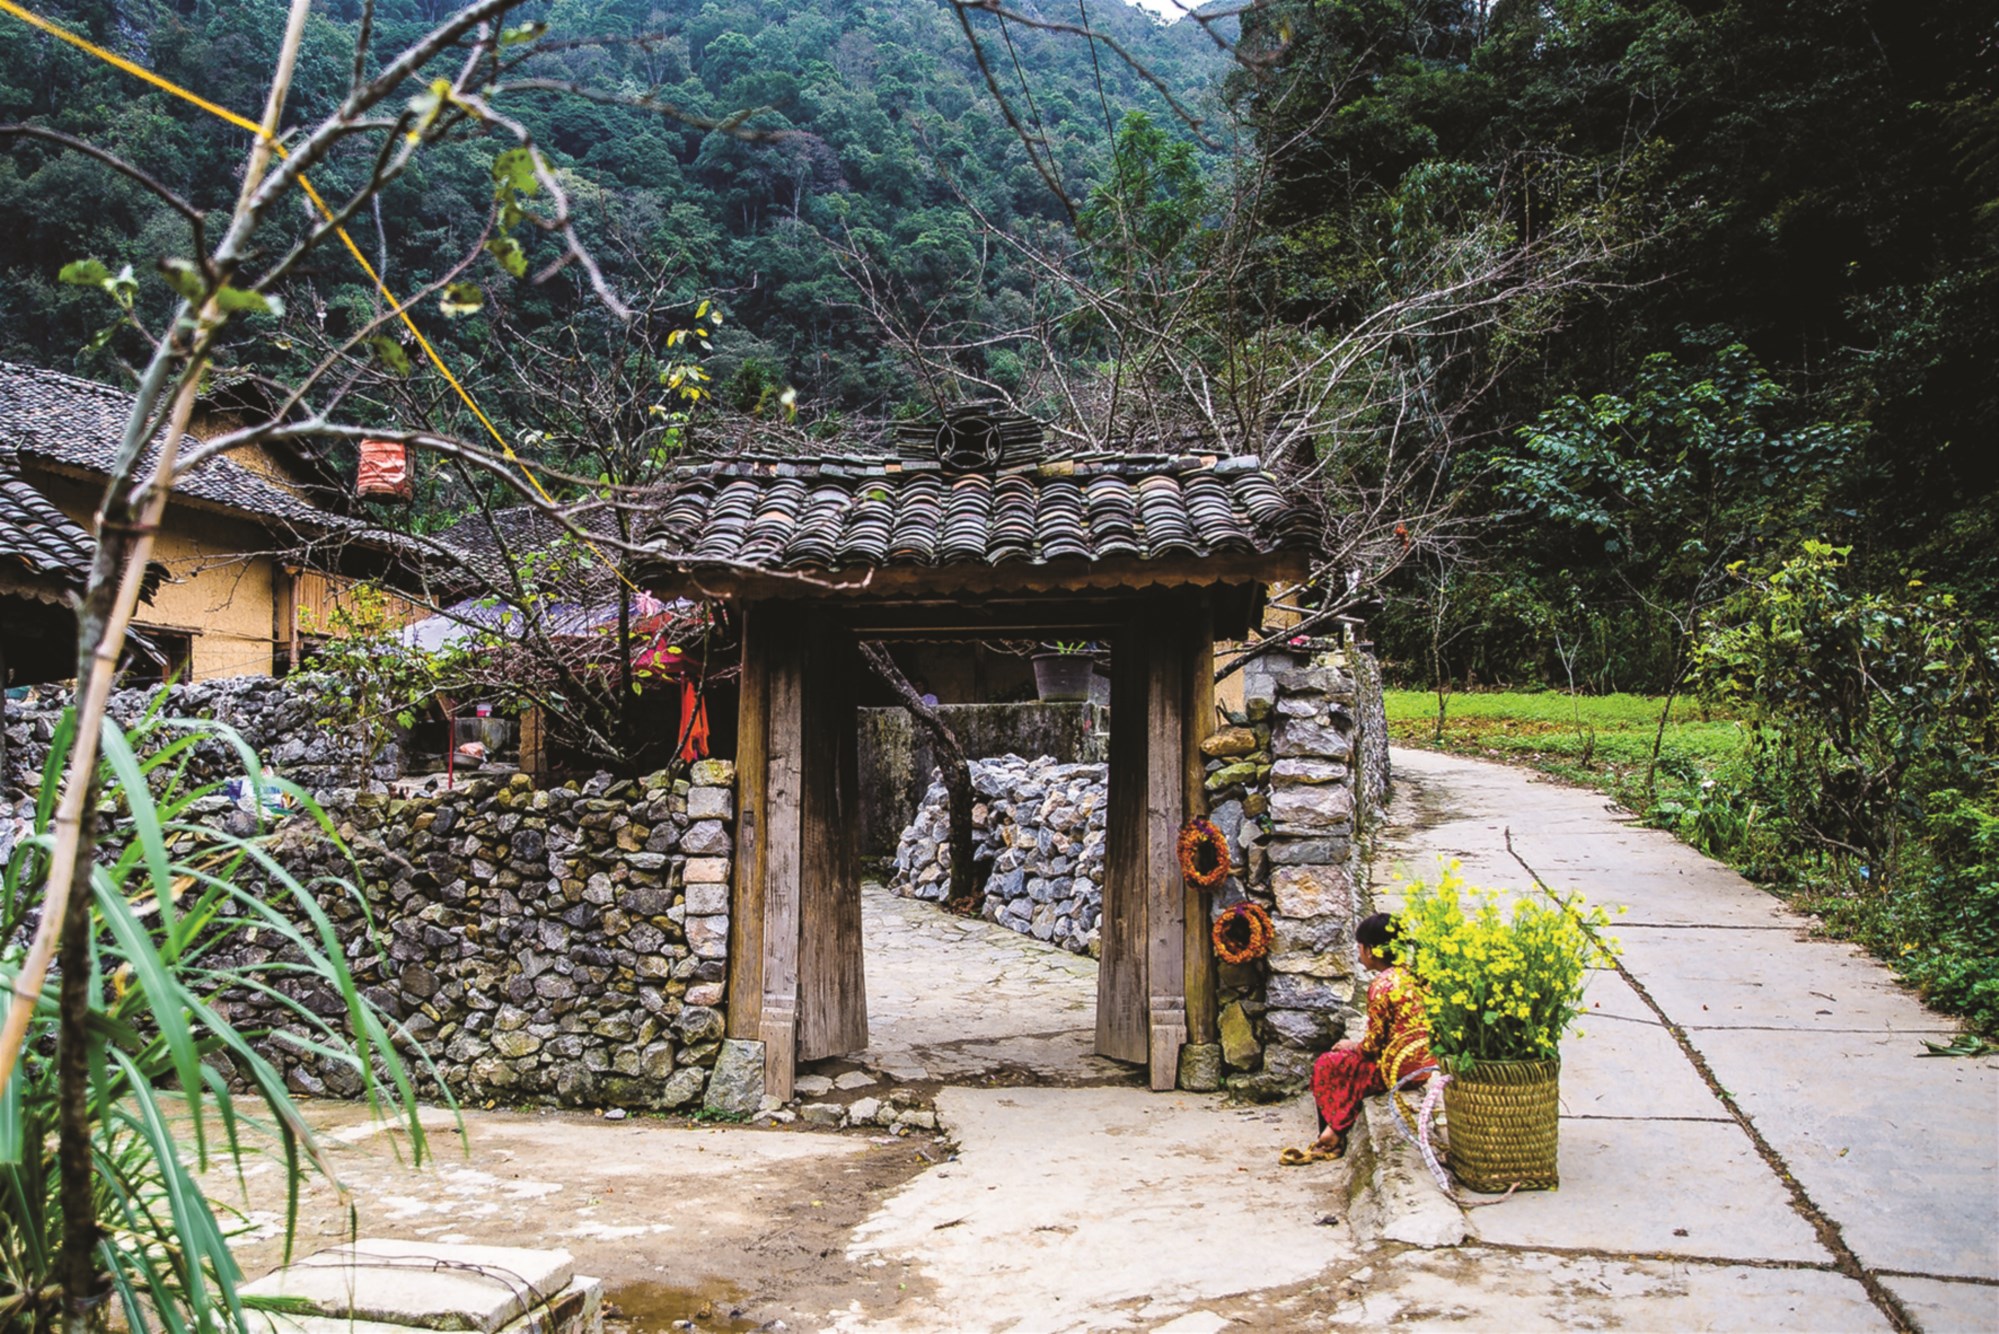 Ngôi nhà được chọn để quay trong phim “Chuyện của Pao” đã trở thành địa điểm không thể bỏ qua của du khách khi tới Hà Giang. (Ảnh TL)